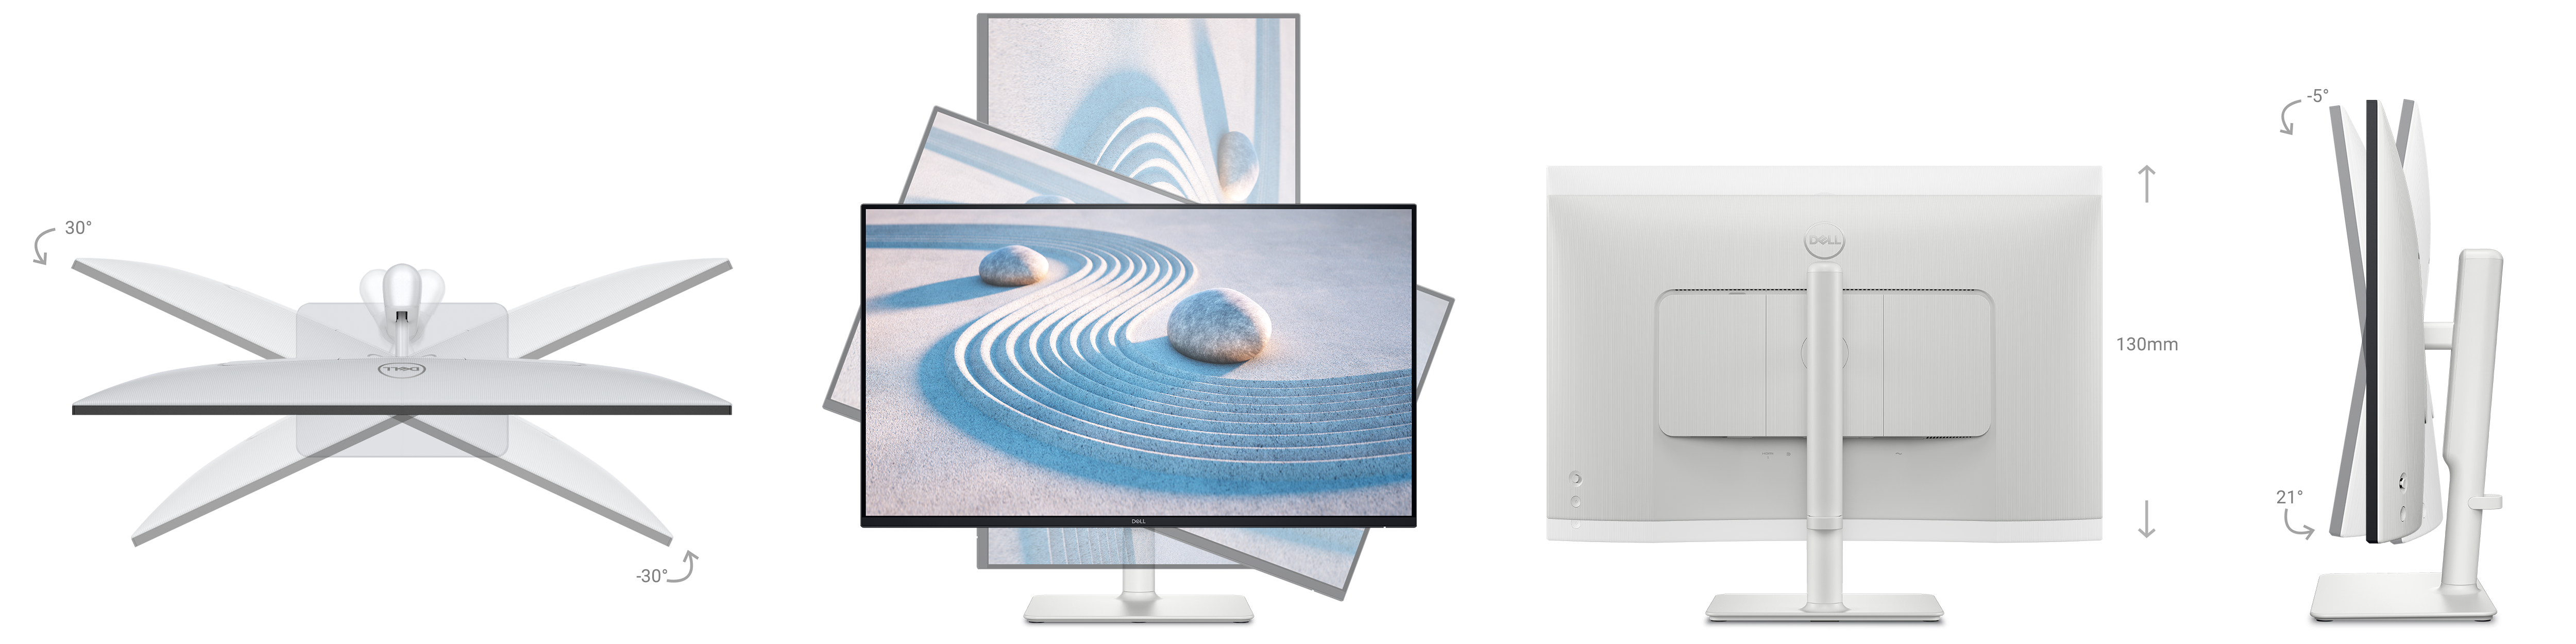 Samling av bilder av skjermen som viser egenskaper for 30 graders vipping, dreiing, 21-graders rotering og 130 mm høydejusterbarhet.